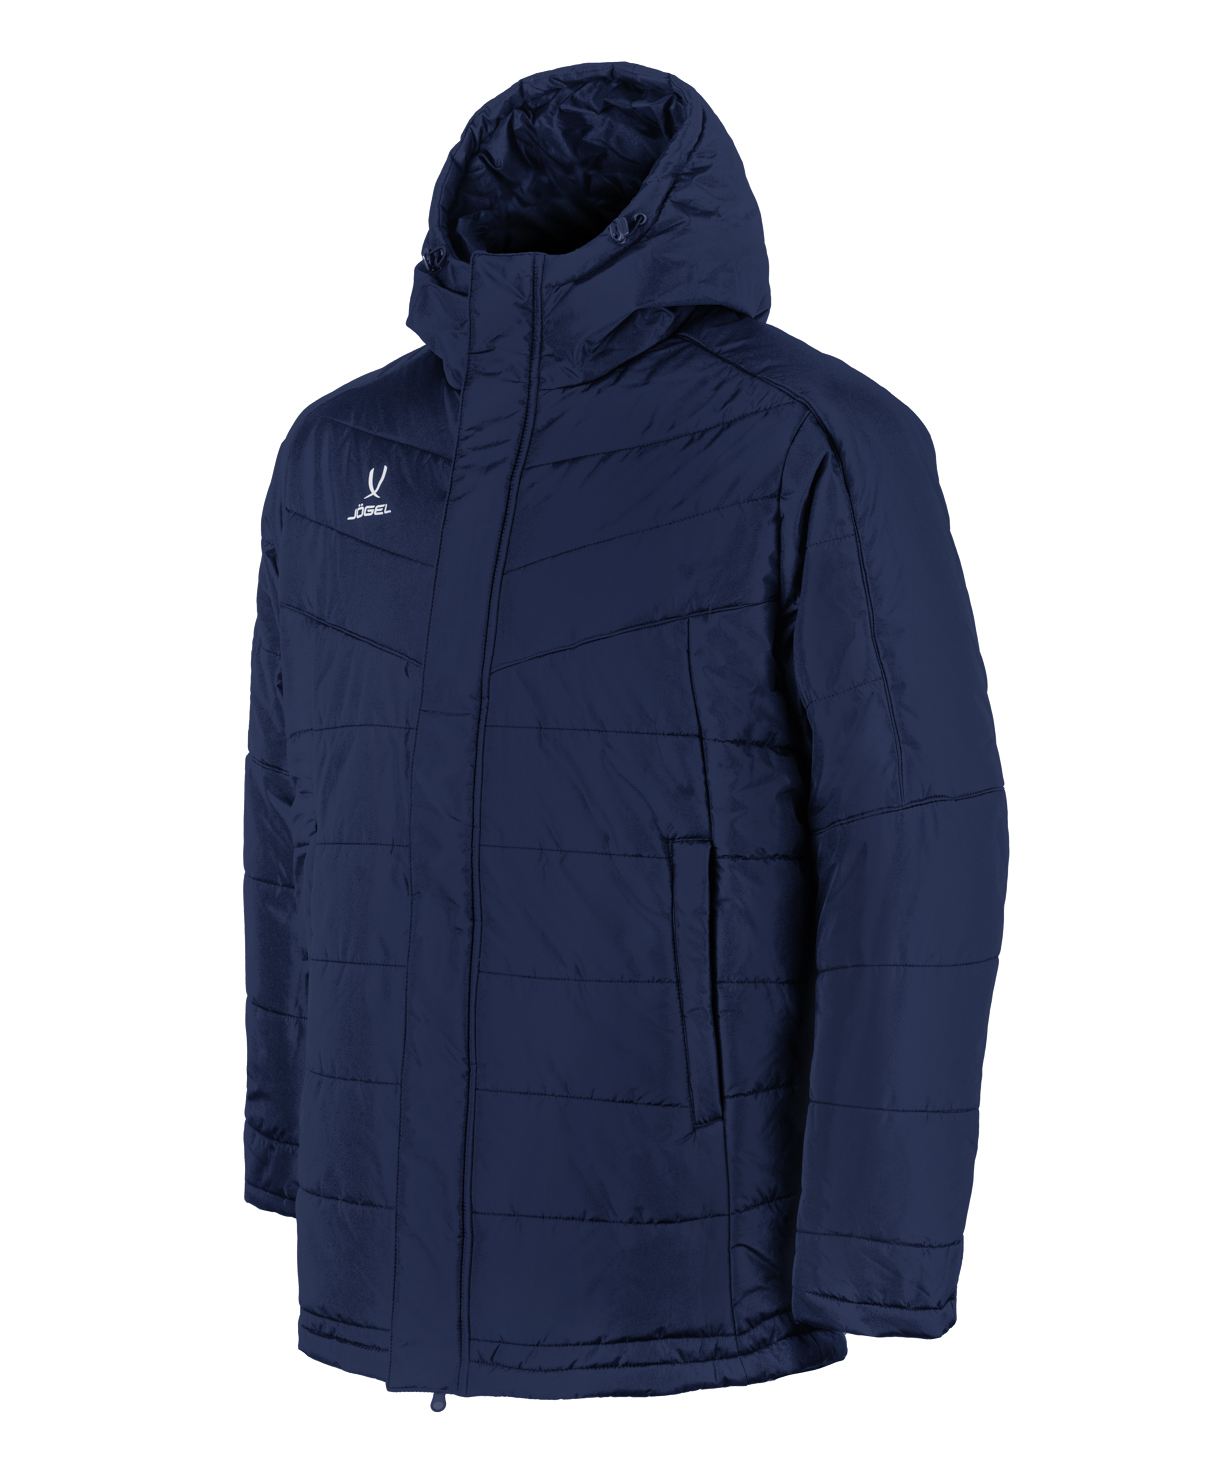 Куртка утепленная Jogel CAMP Padded Jacket, темно-синий, детский - XS УТ-00021070_XS шорты баскетбольные jogel camp basic синий детский xs